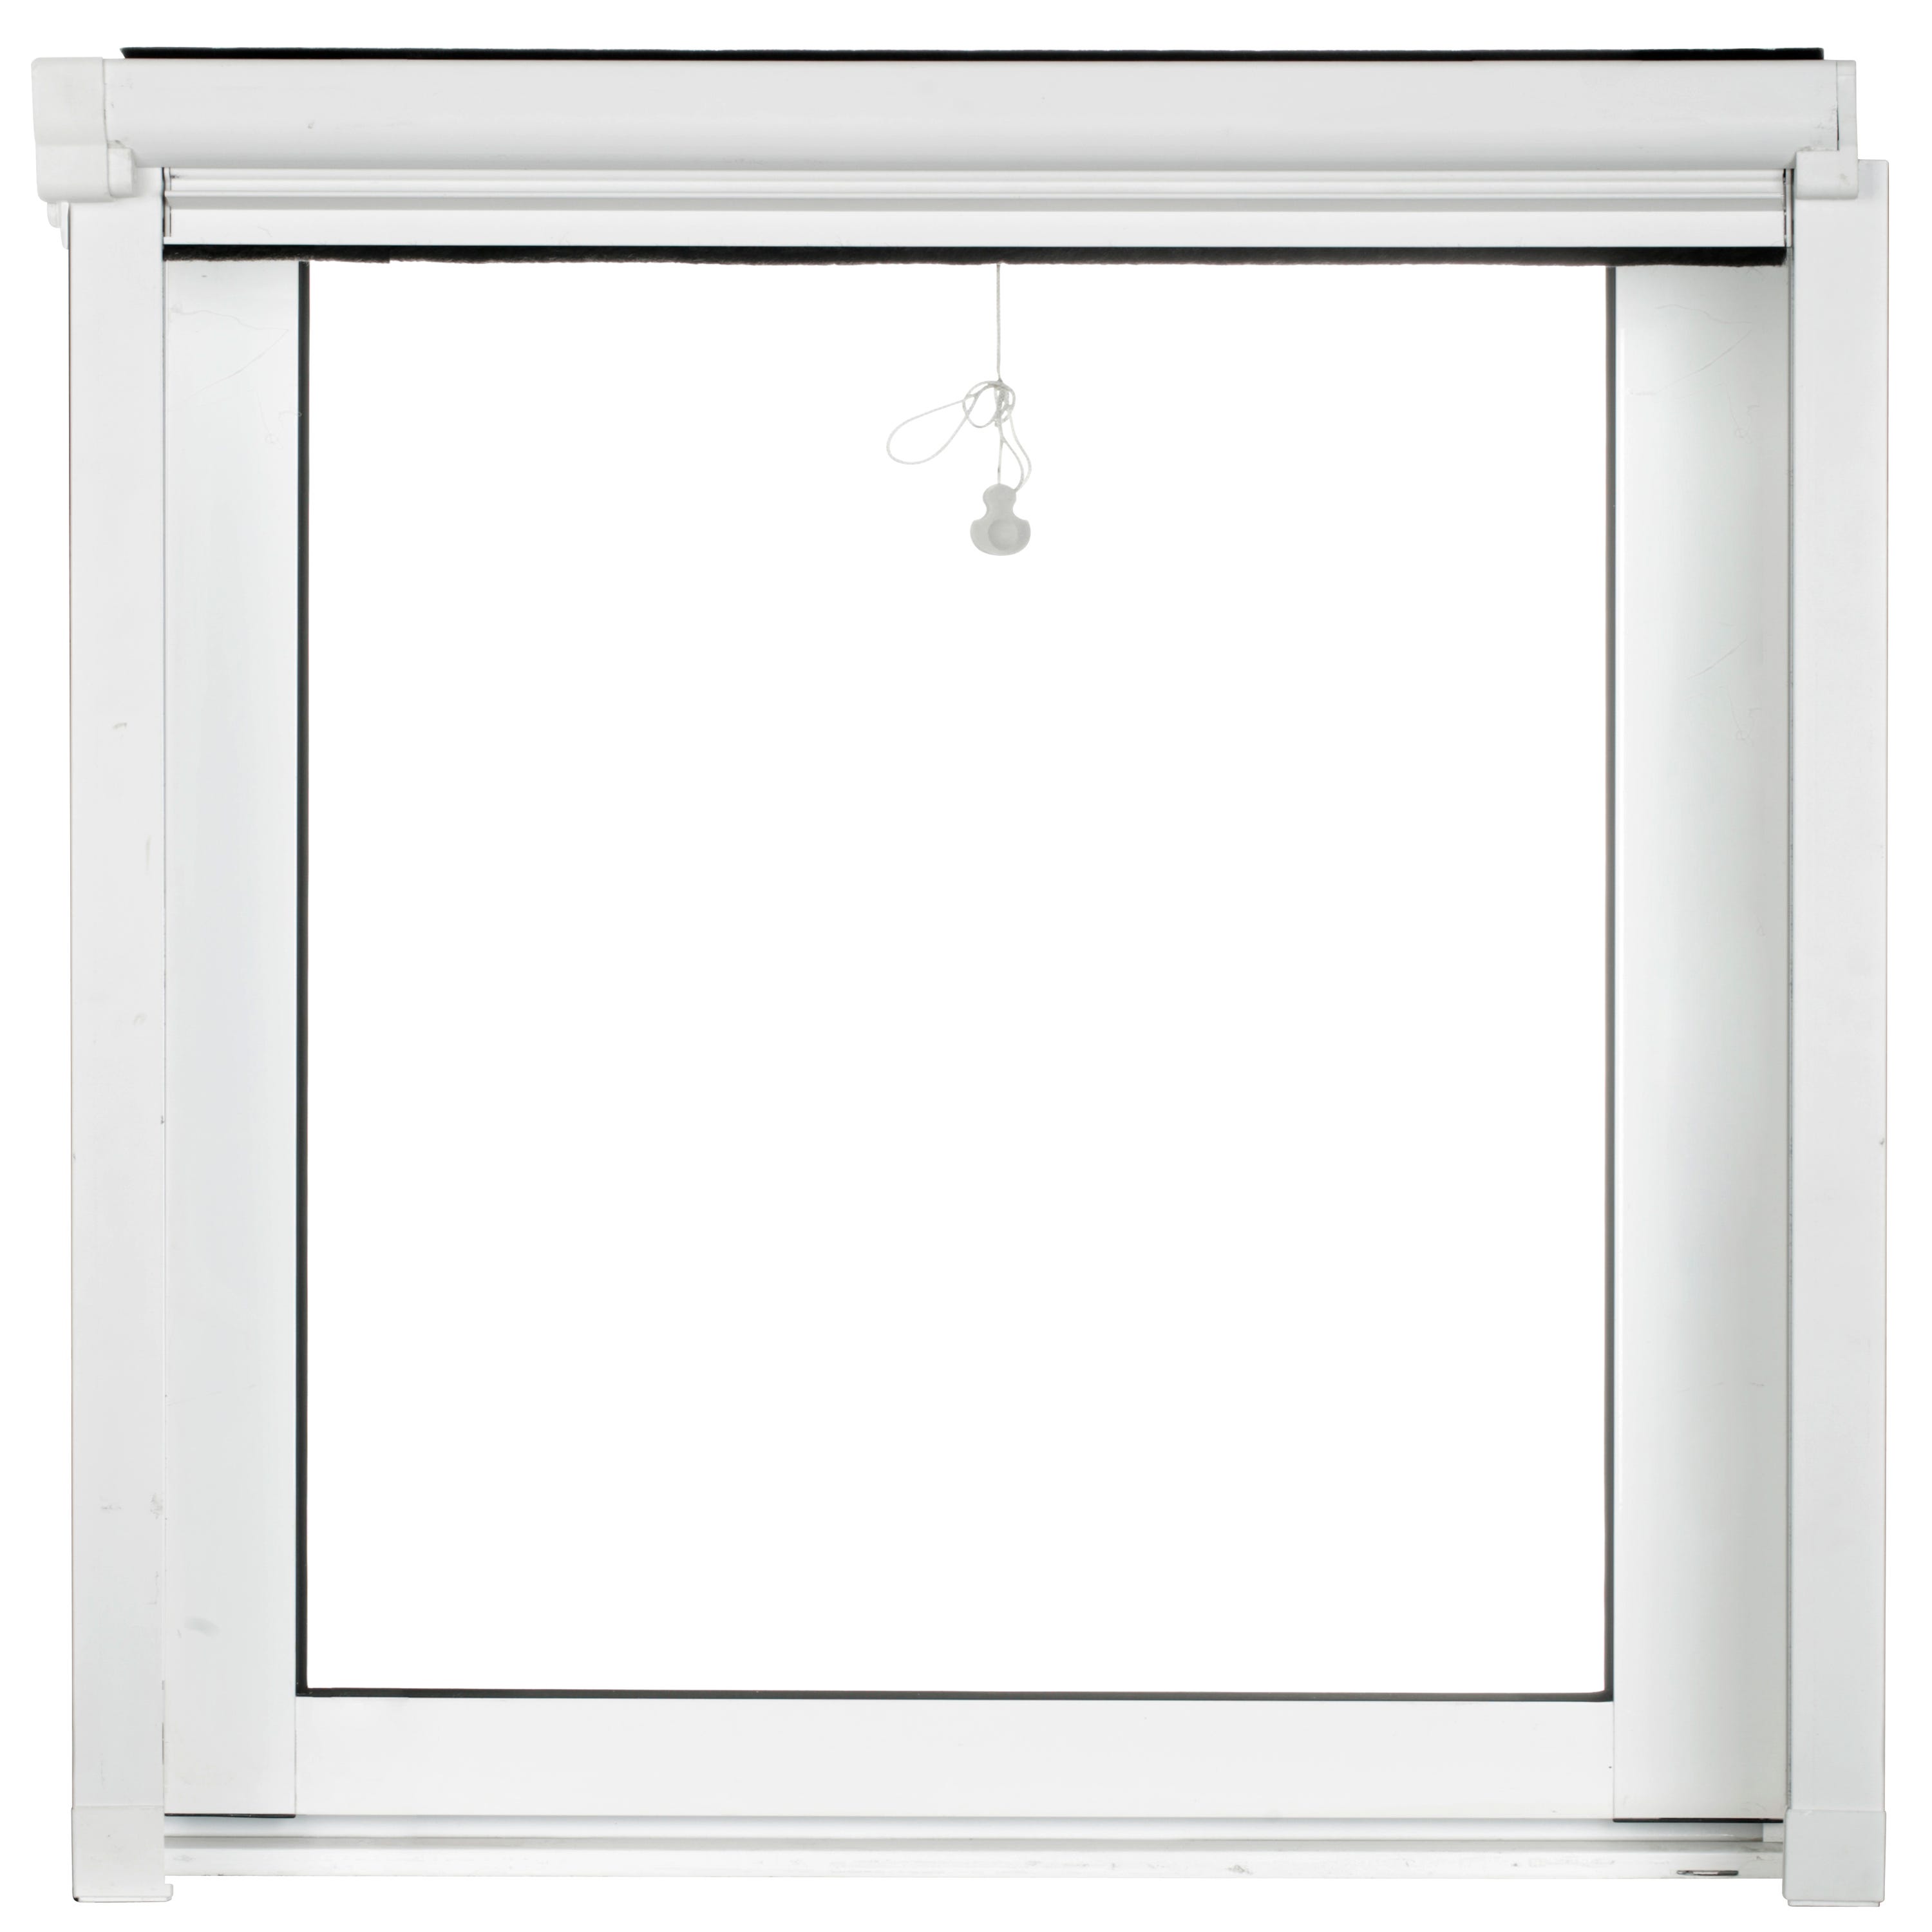 Marco de ventana con mosquitera (50 x 70 / 130 cm) Blanco y gris -  Cortina/Visillo/ Estor - Eminza